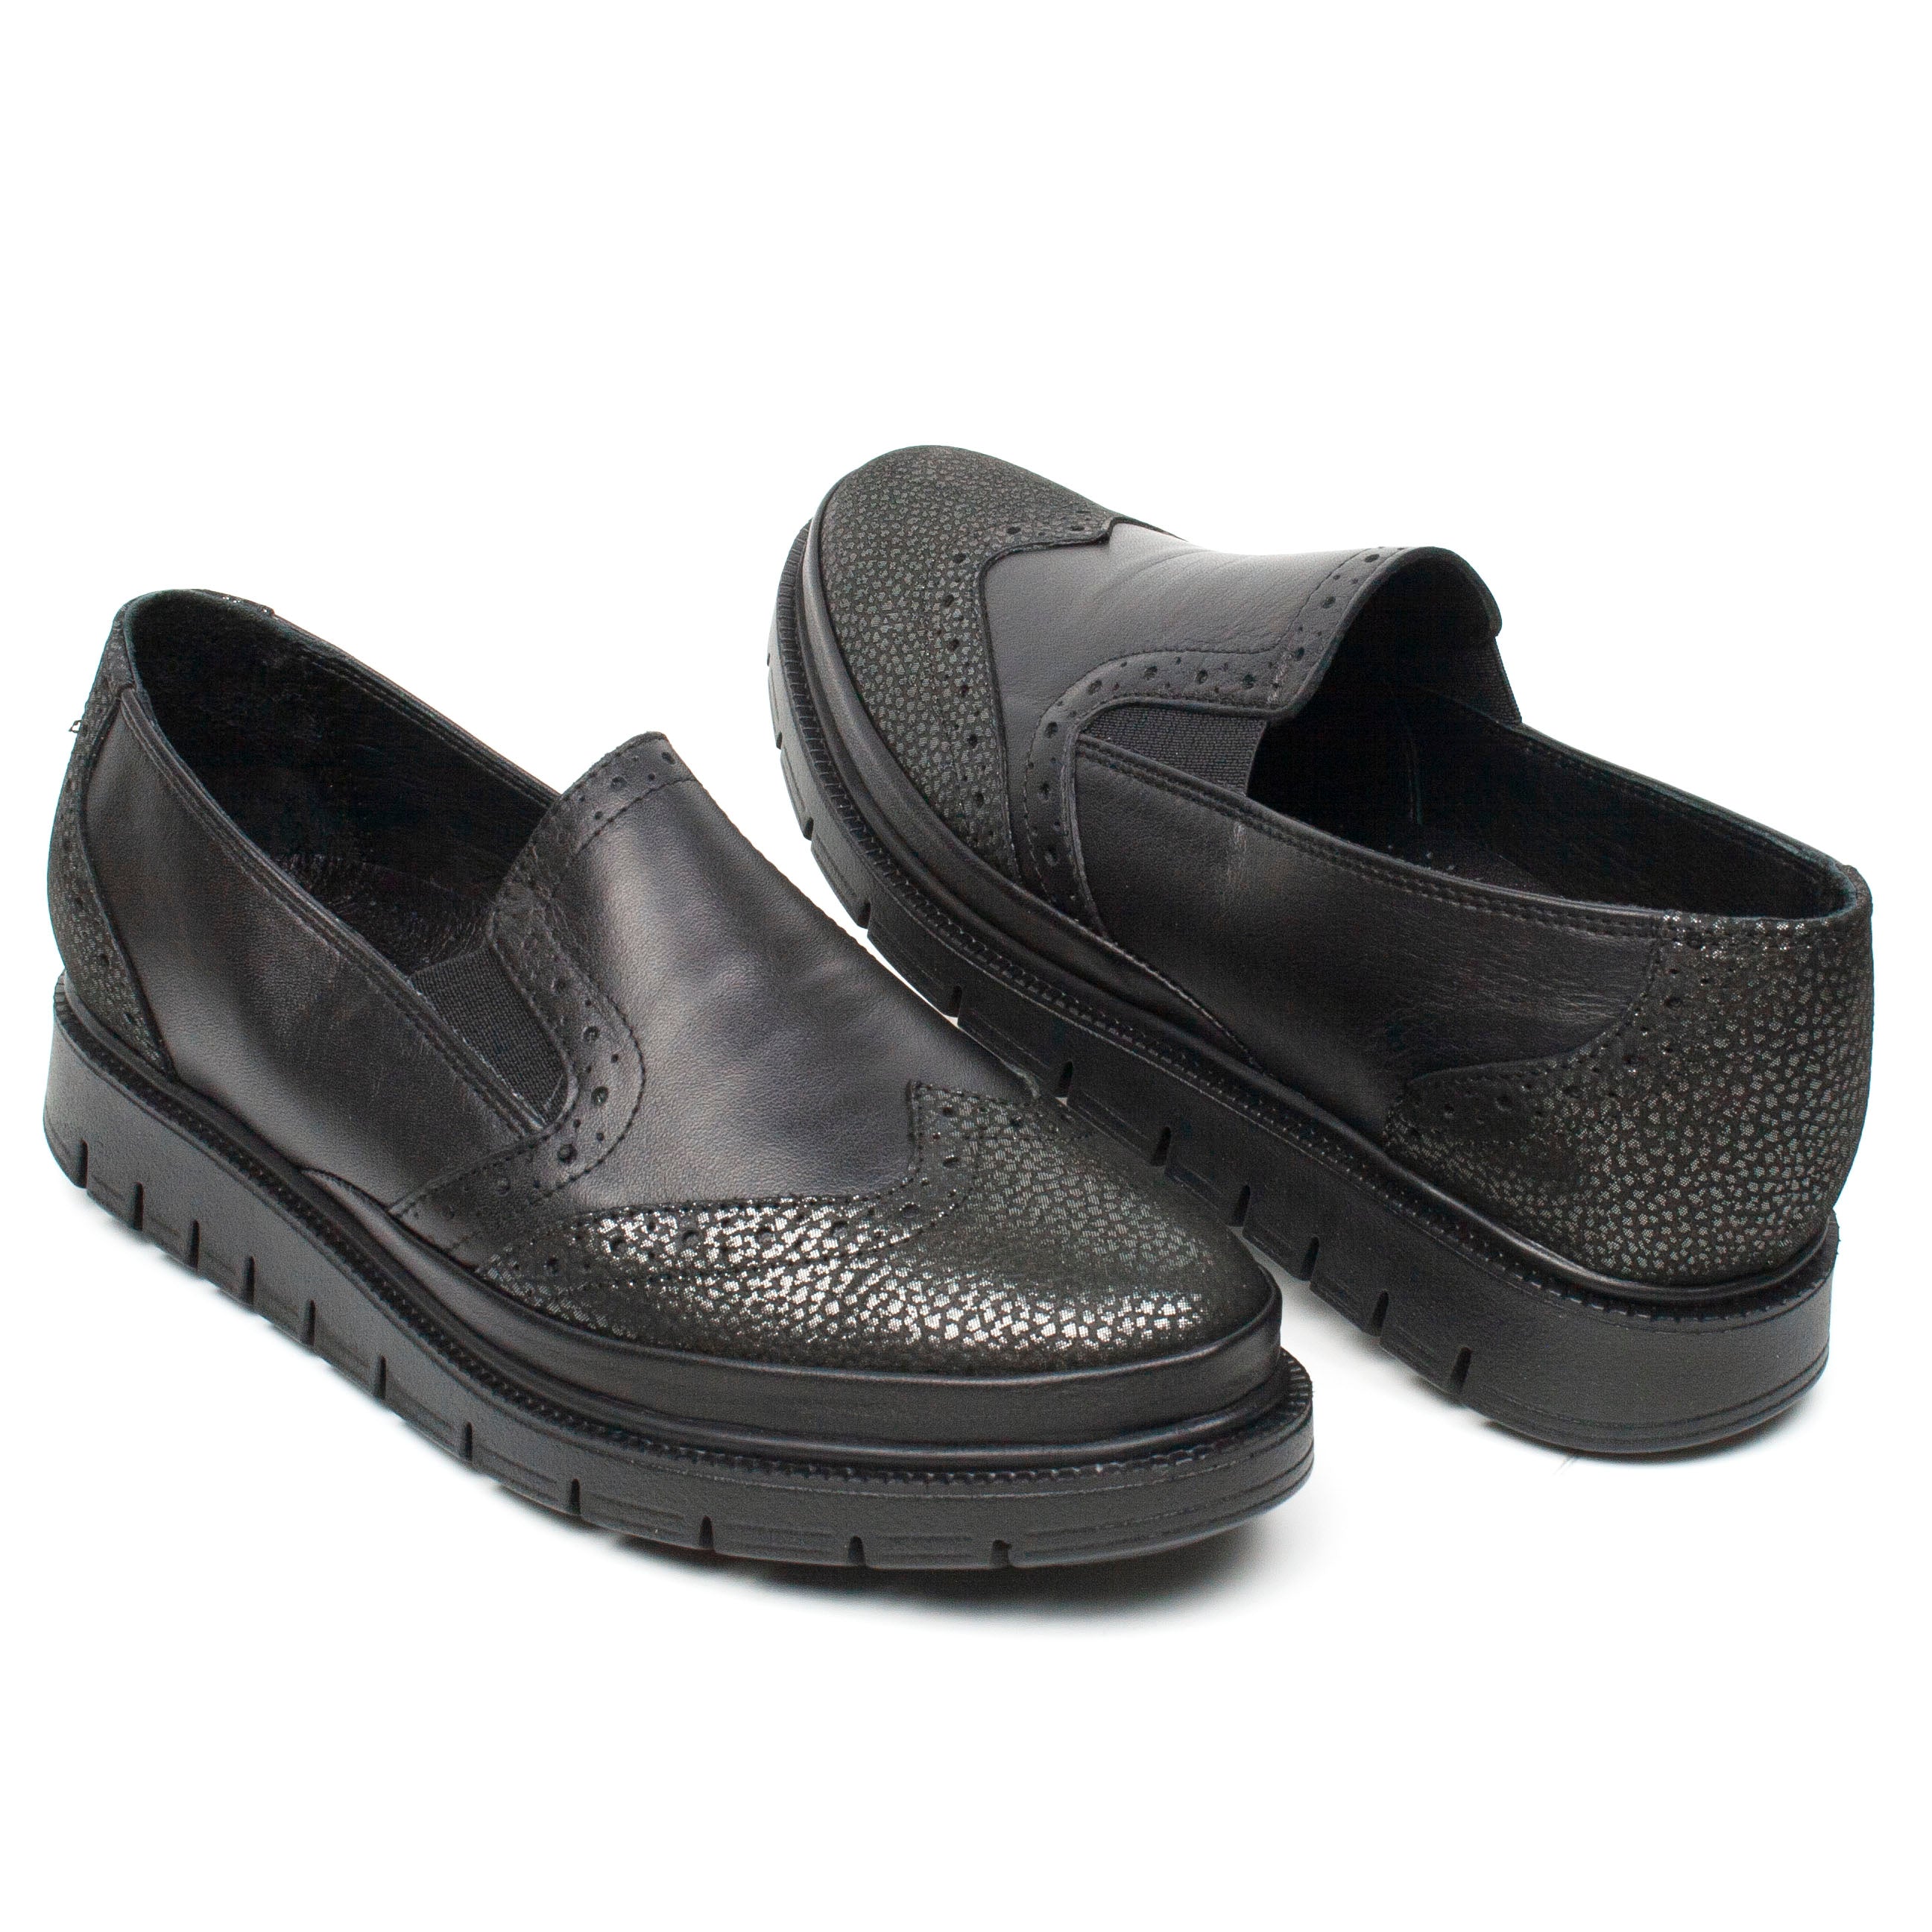 Caspian Pantofi dama negru amasai ID2216-NG.AM